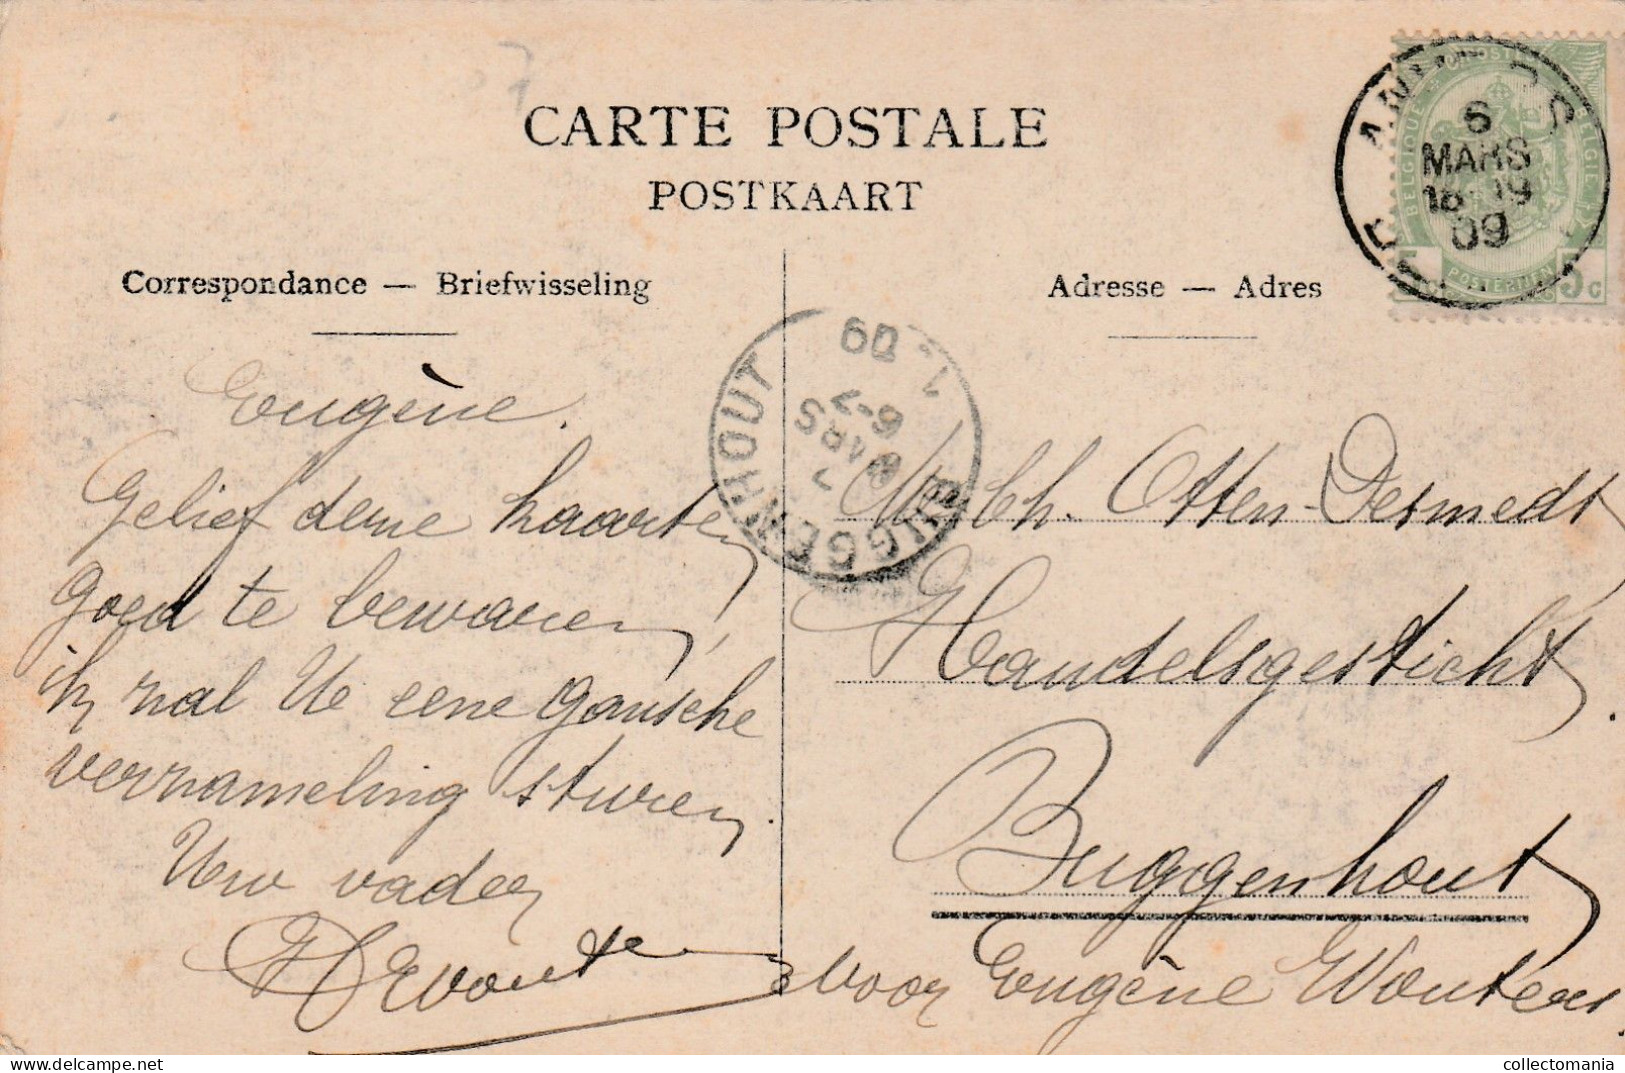 2 Oude Postkaarten Wuestwezel  Wustwezel  "den Herkuul" Wagen Geladen Met 3000kg Kasseien 1905 - Wuustwezel